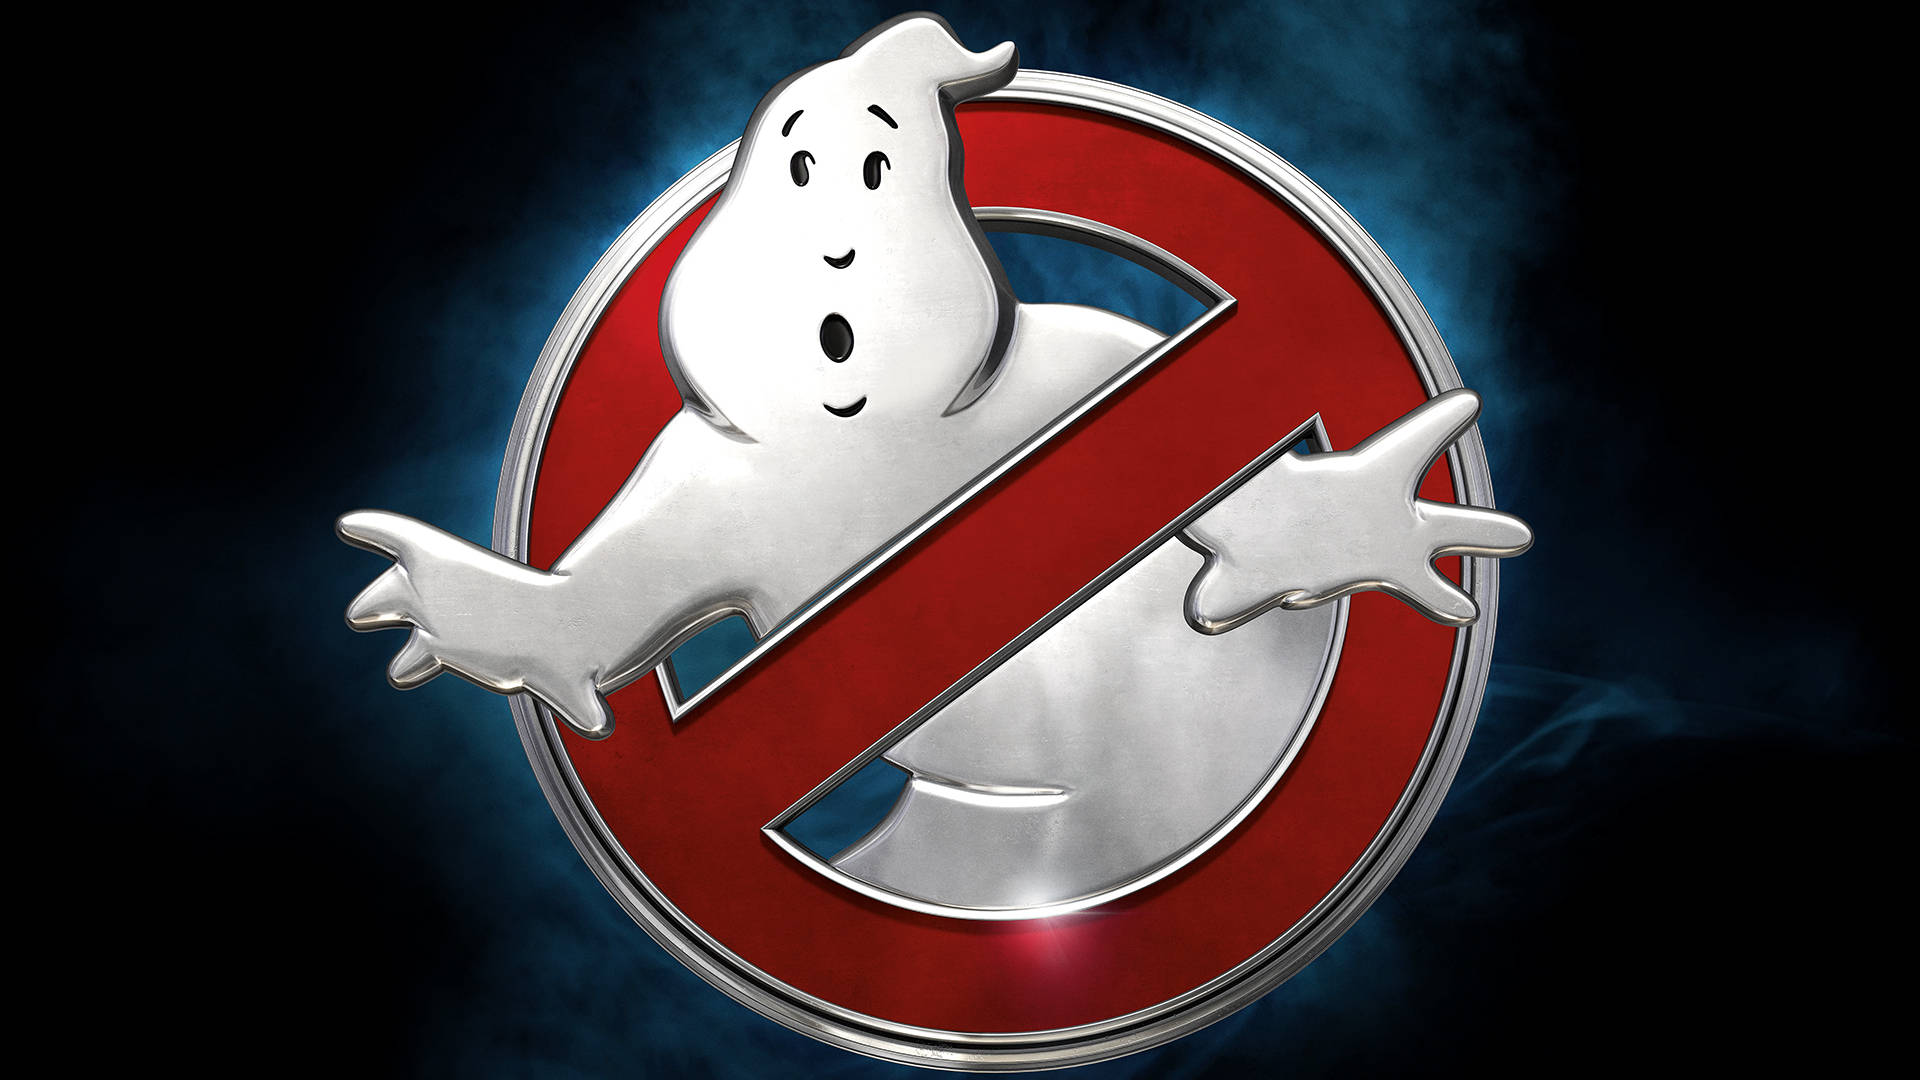 Ghostbusters logo Wallpaper